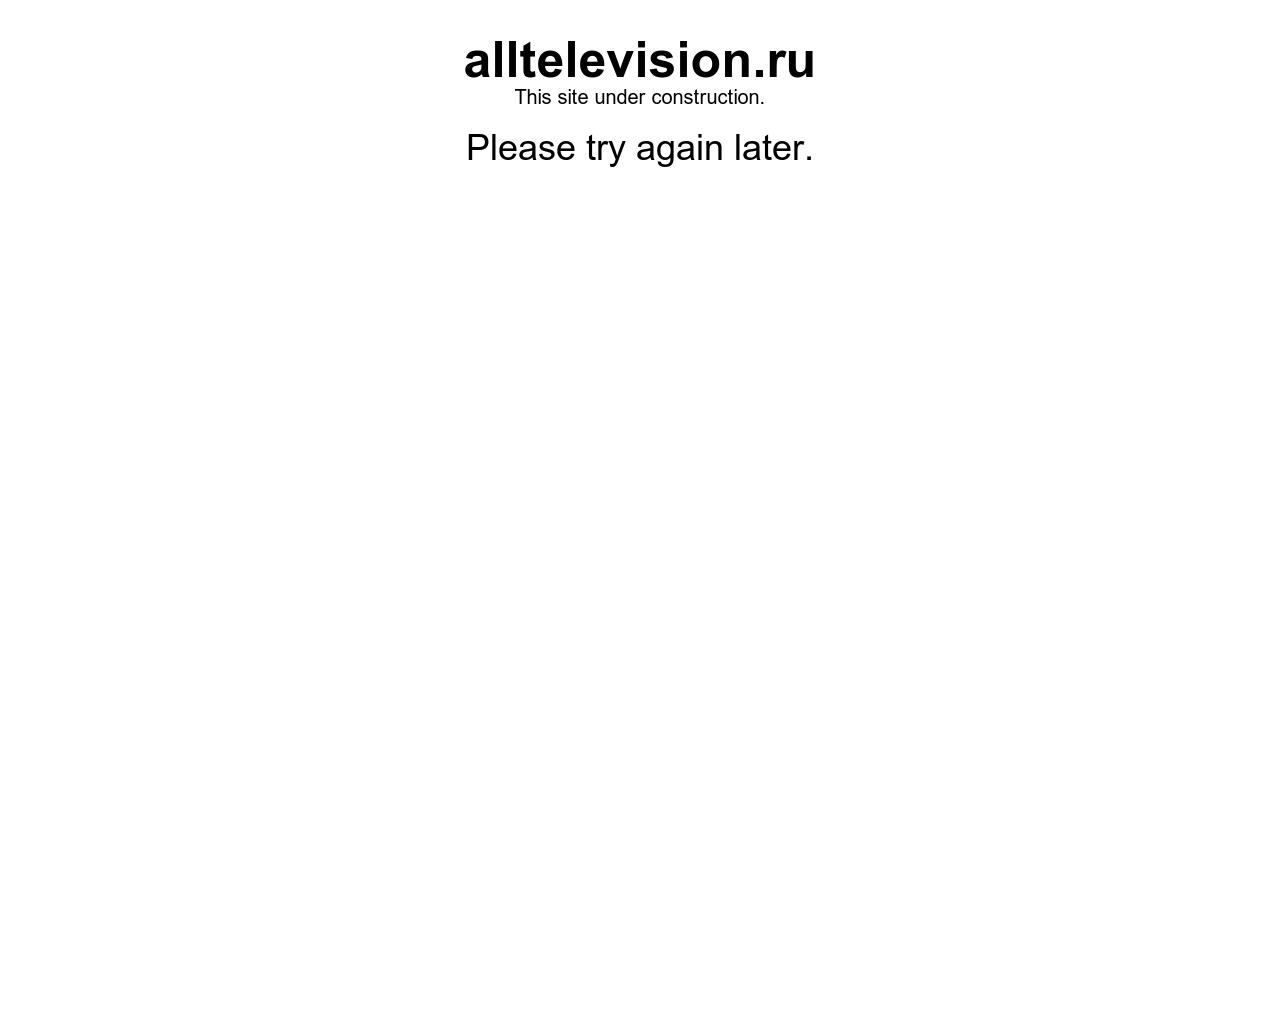 Изображение сайта alltelevision.ru в разрешении 1280x1024